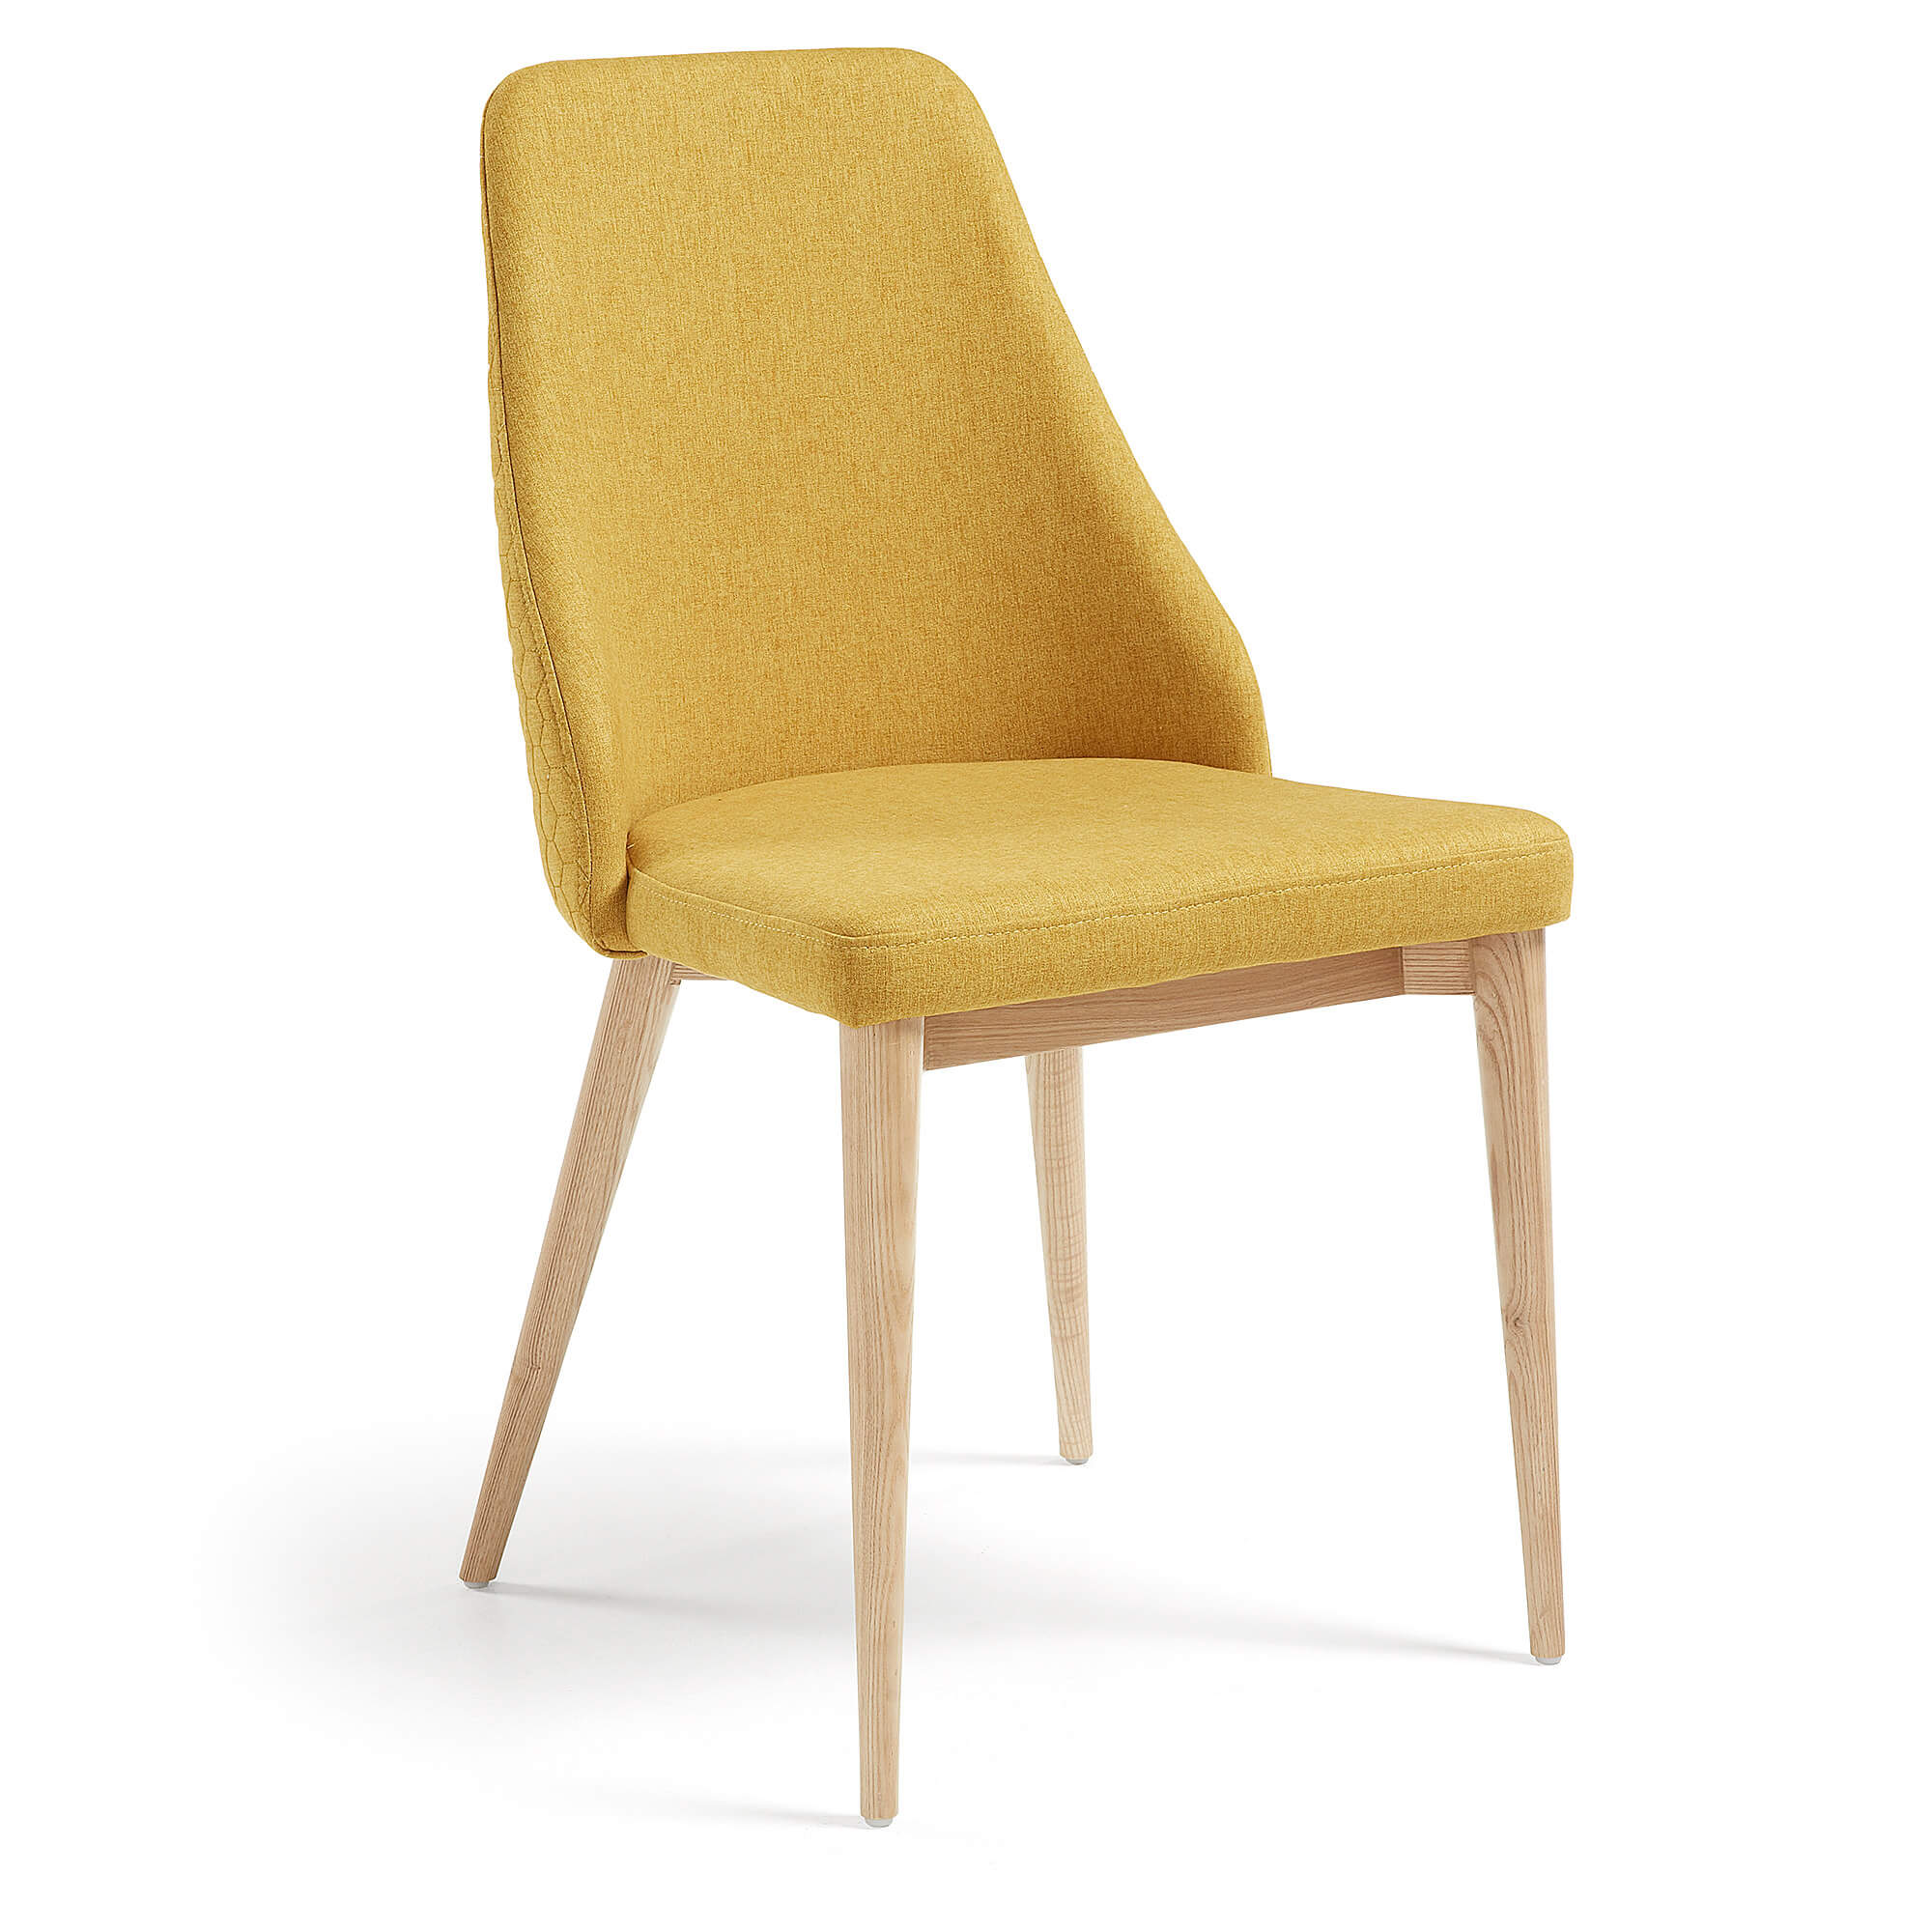 R DE ROOM silla de comedor color mostaza. Parte exterior del respaldo con pespuntes de formas hexagonales. Silla muy cómoda.